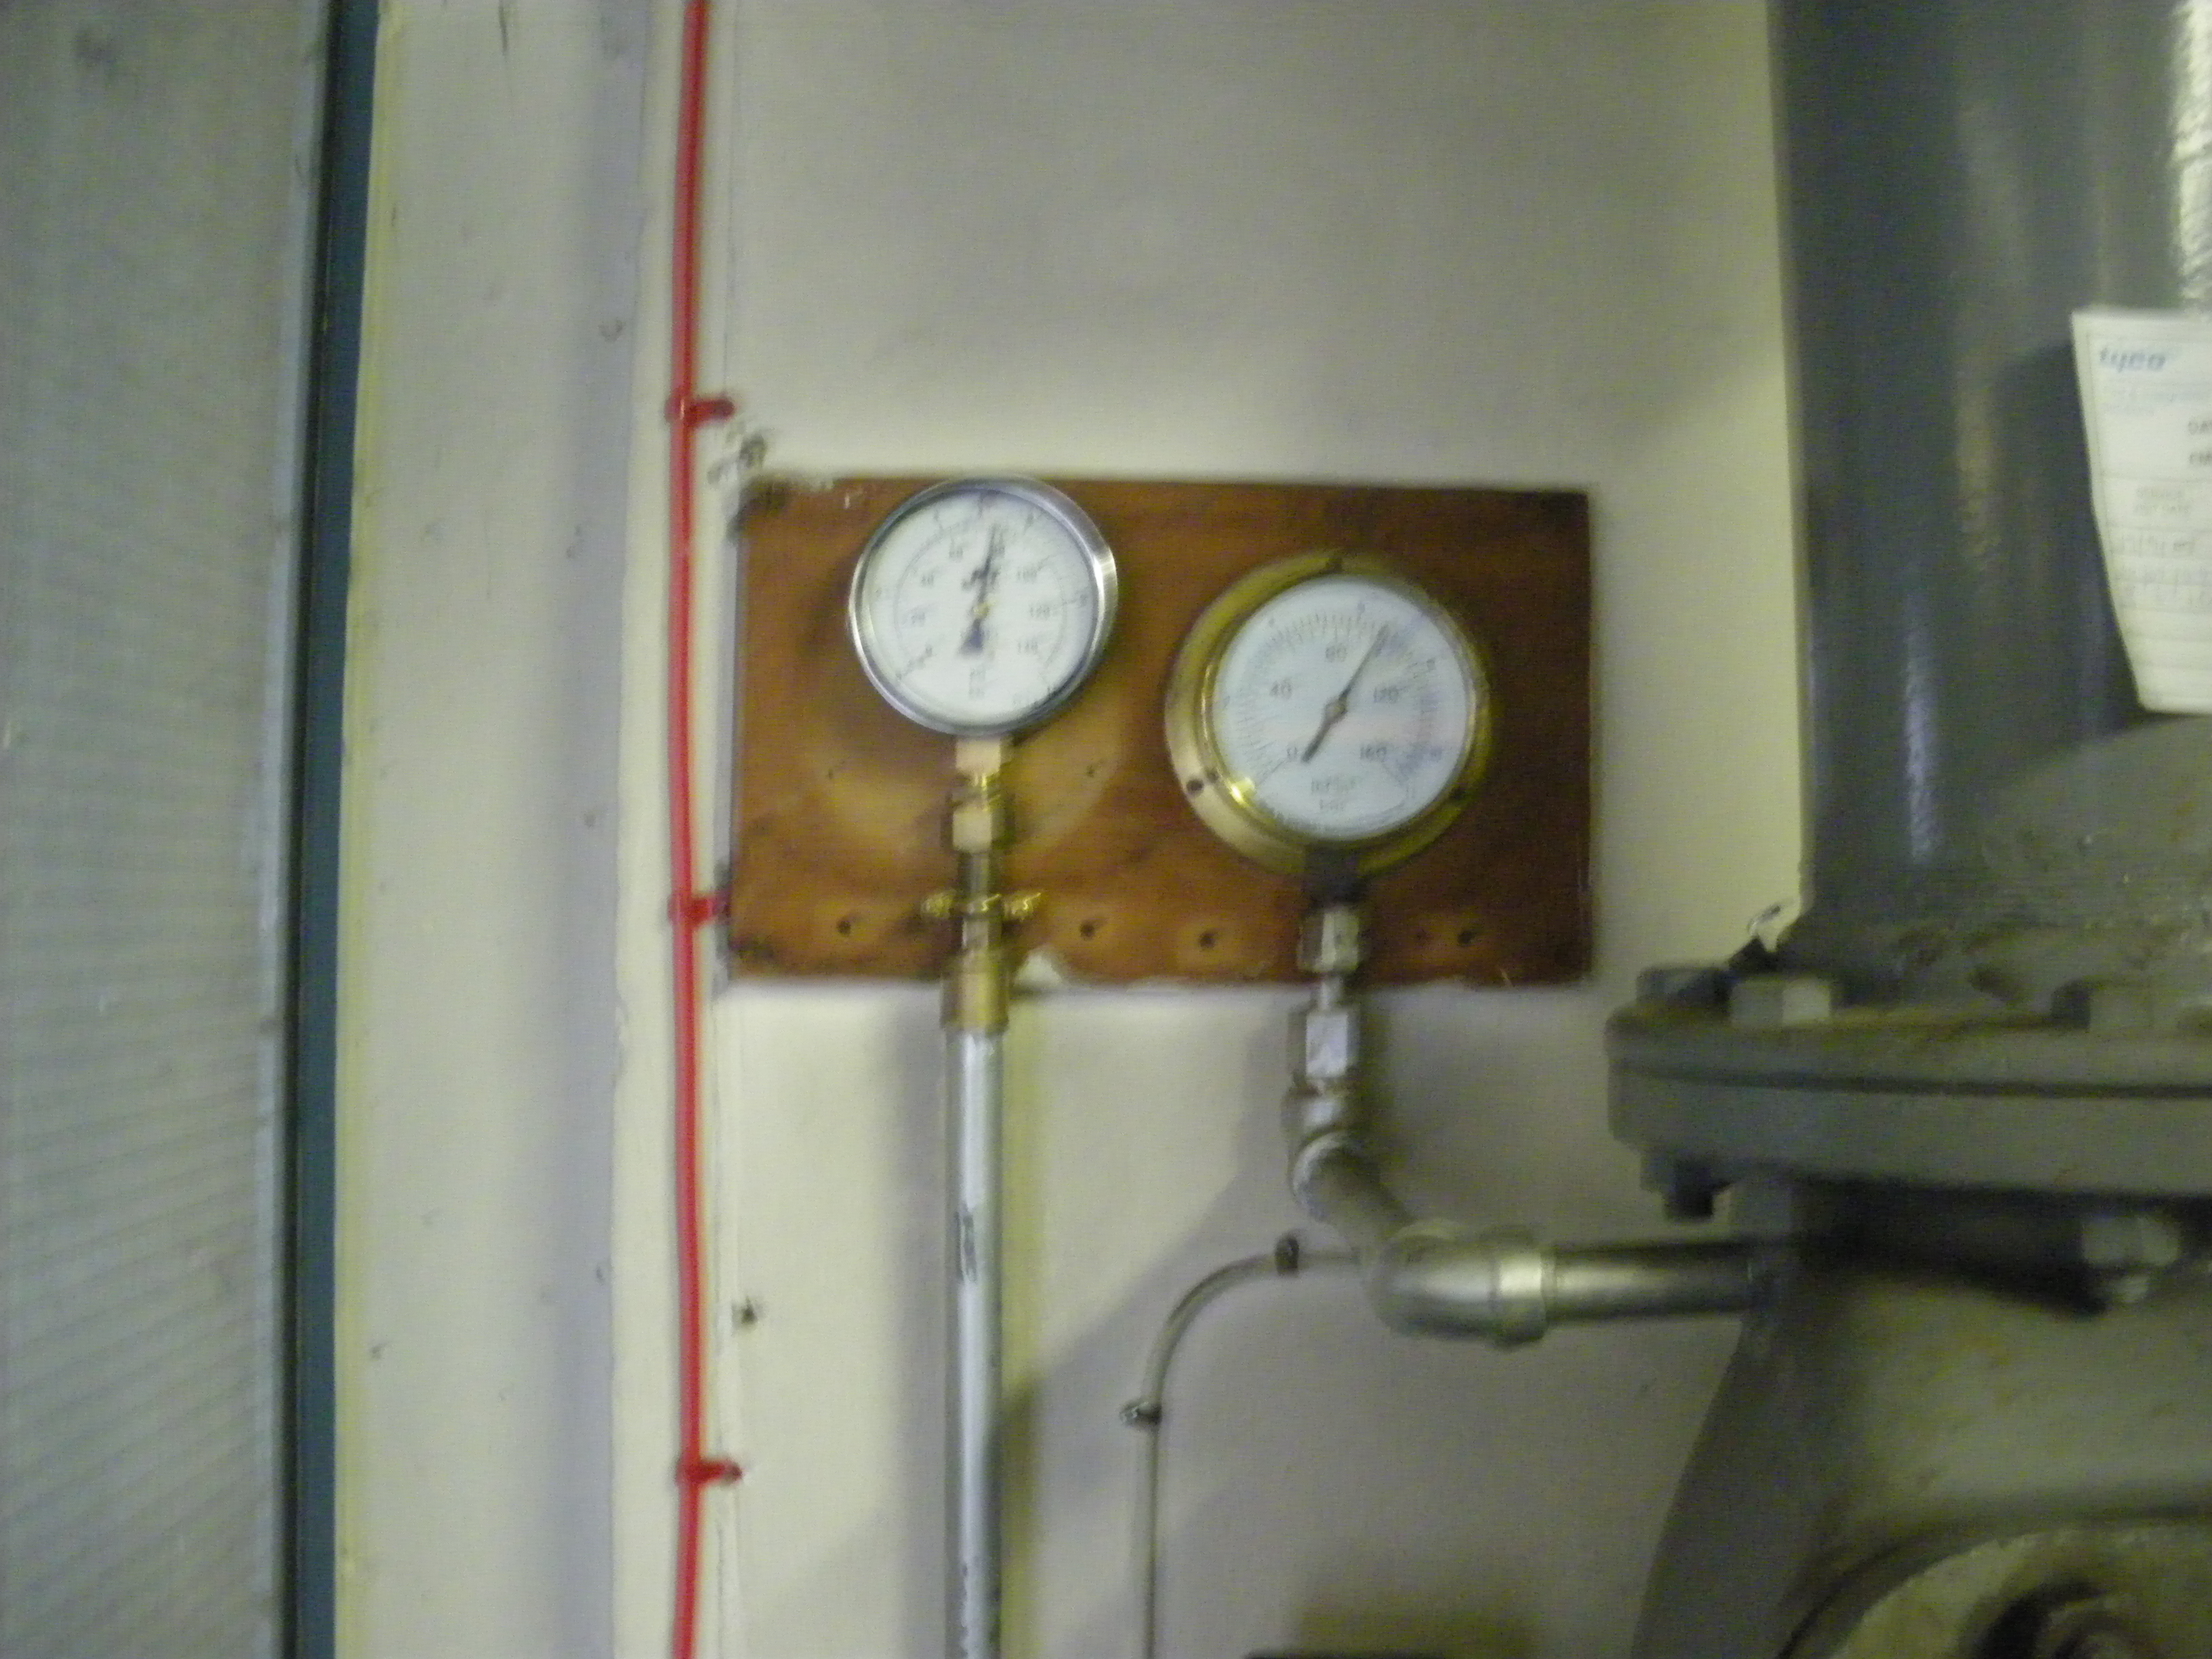 Sprinkler system pressure gauges